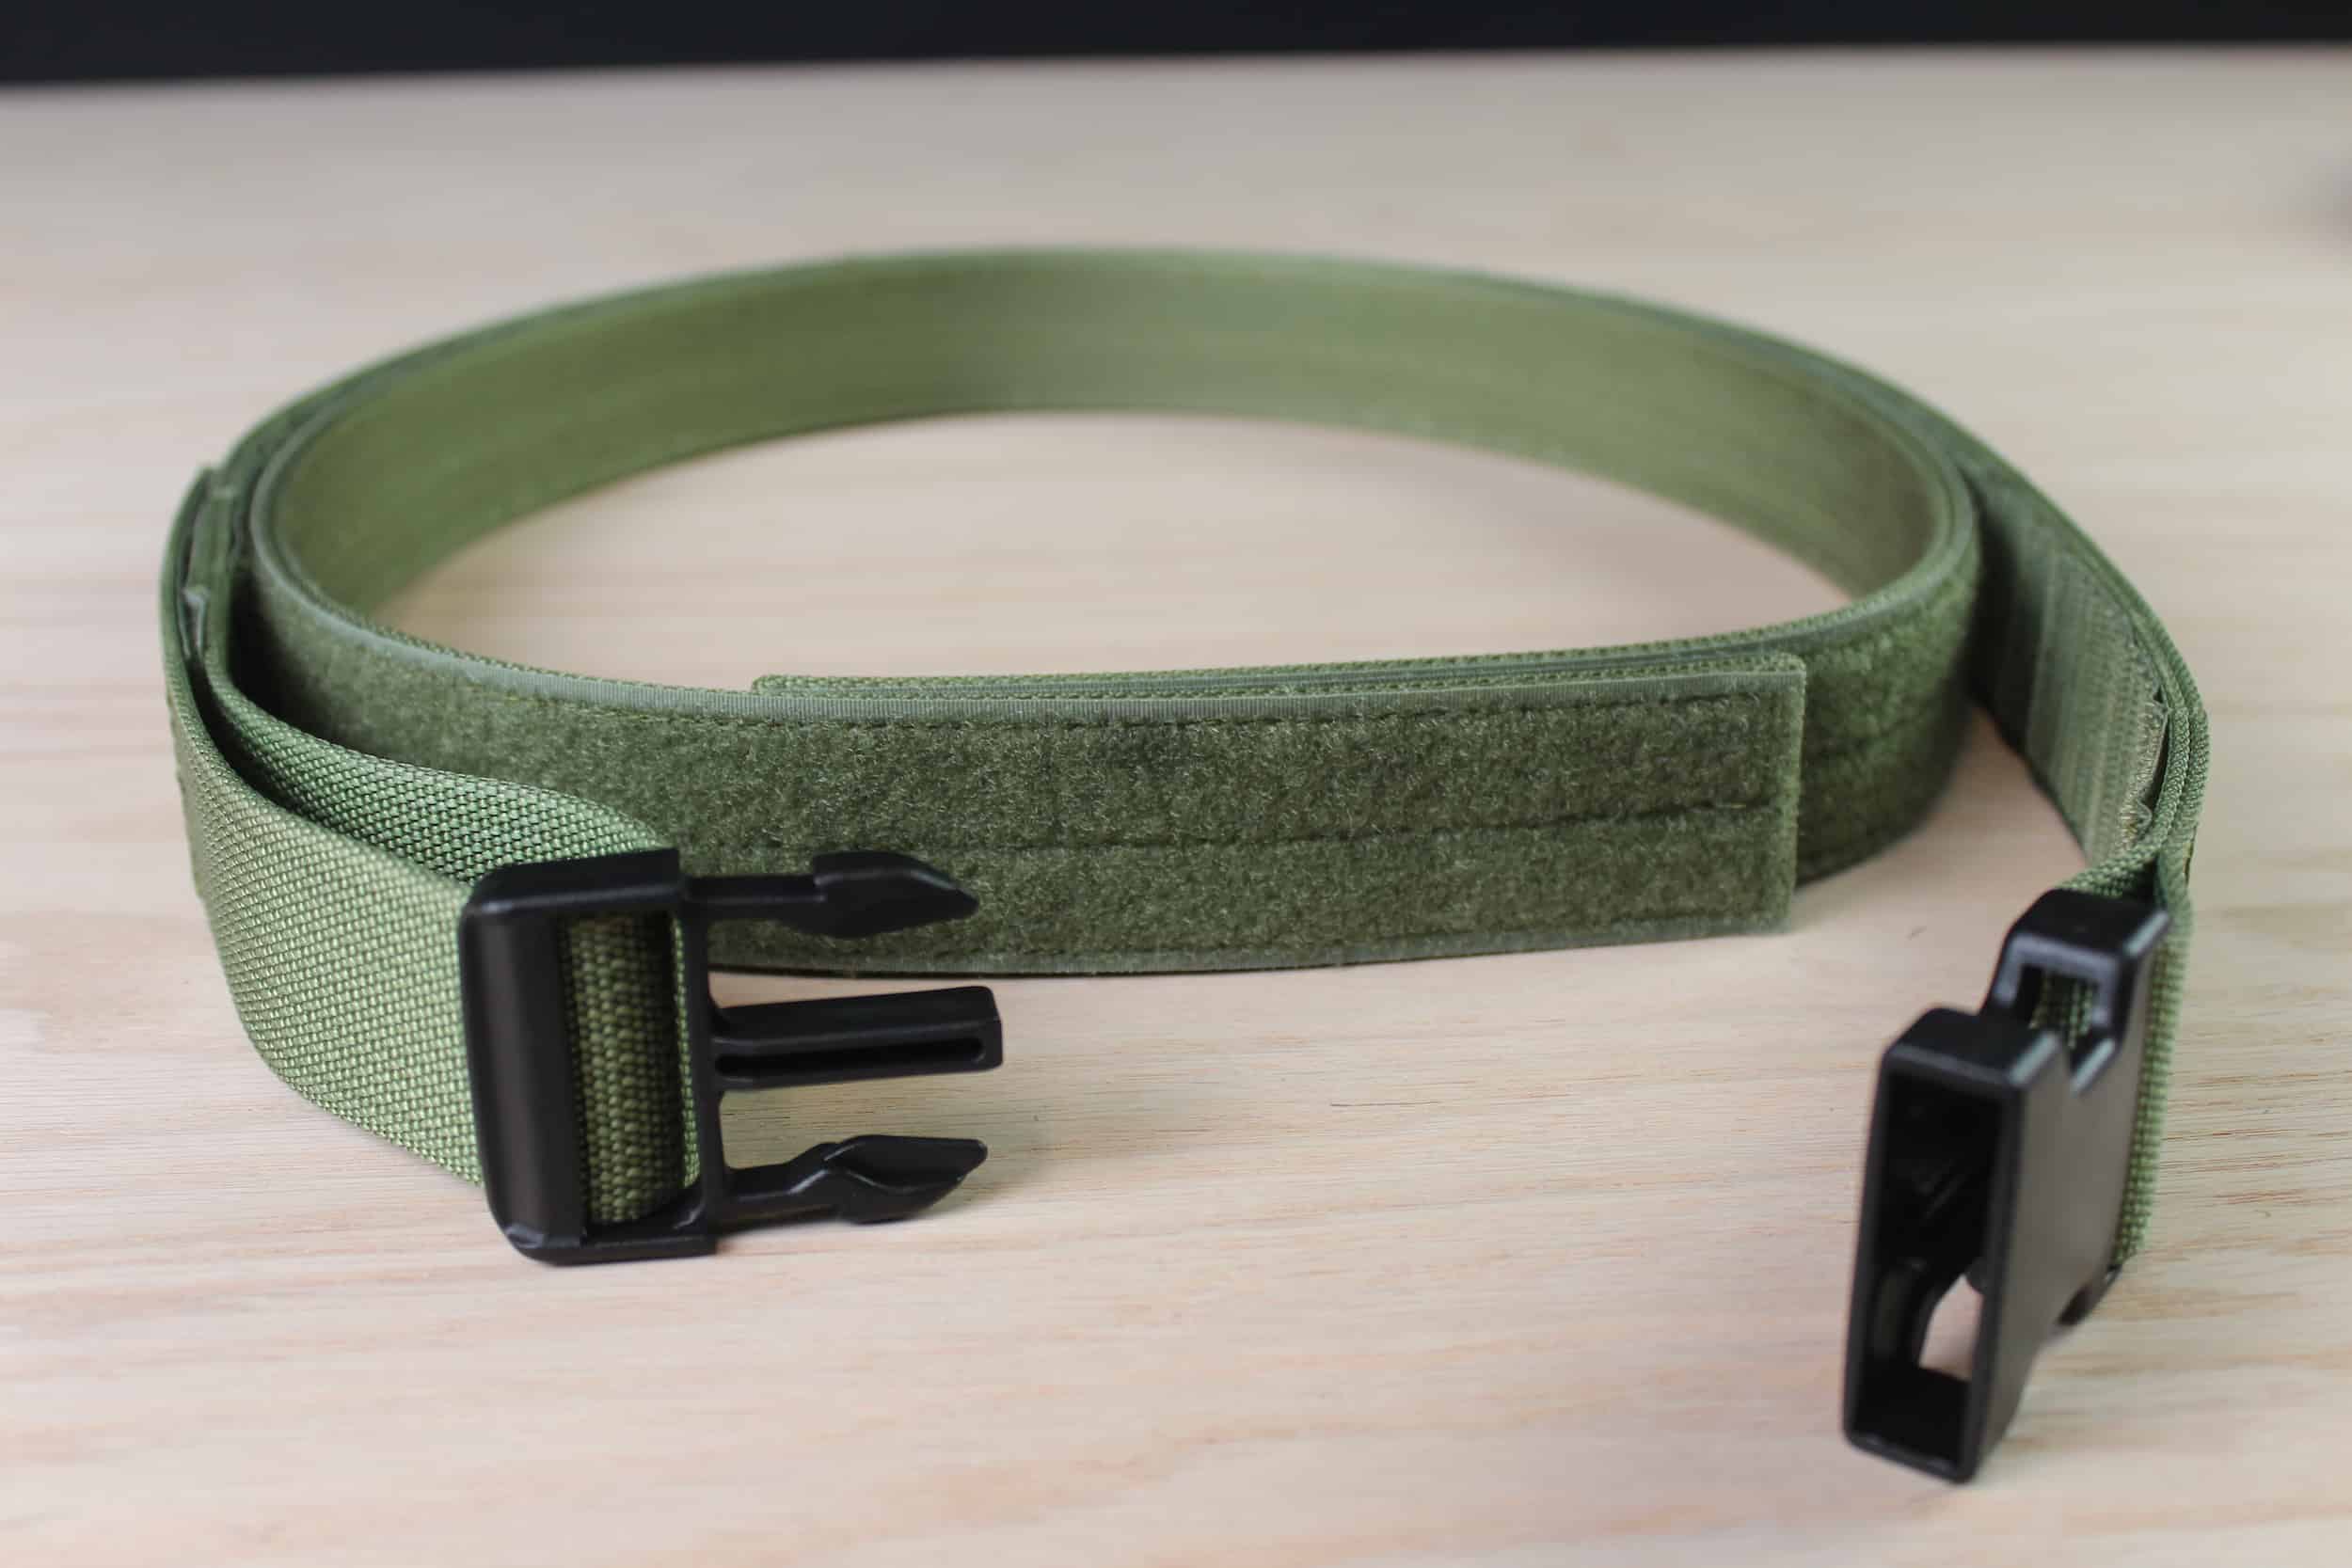 Olive Drab Green Strike Belt - Double Belt System 